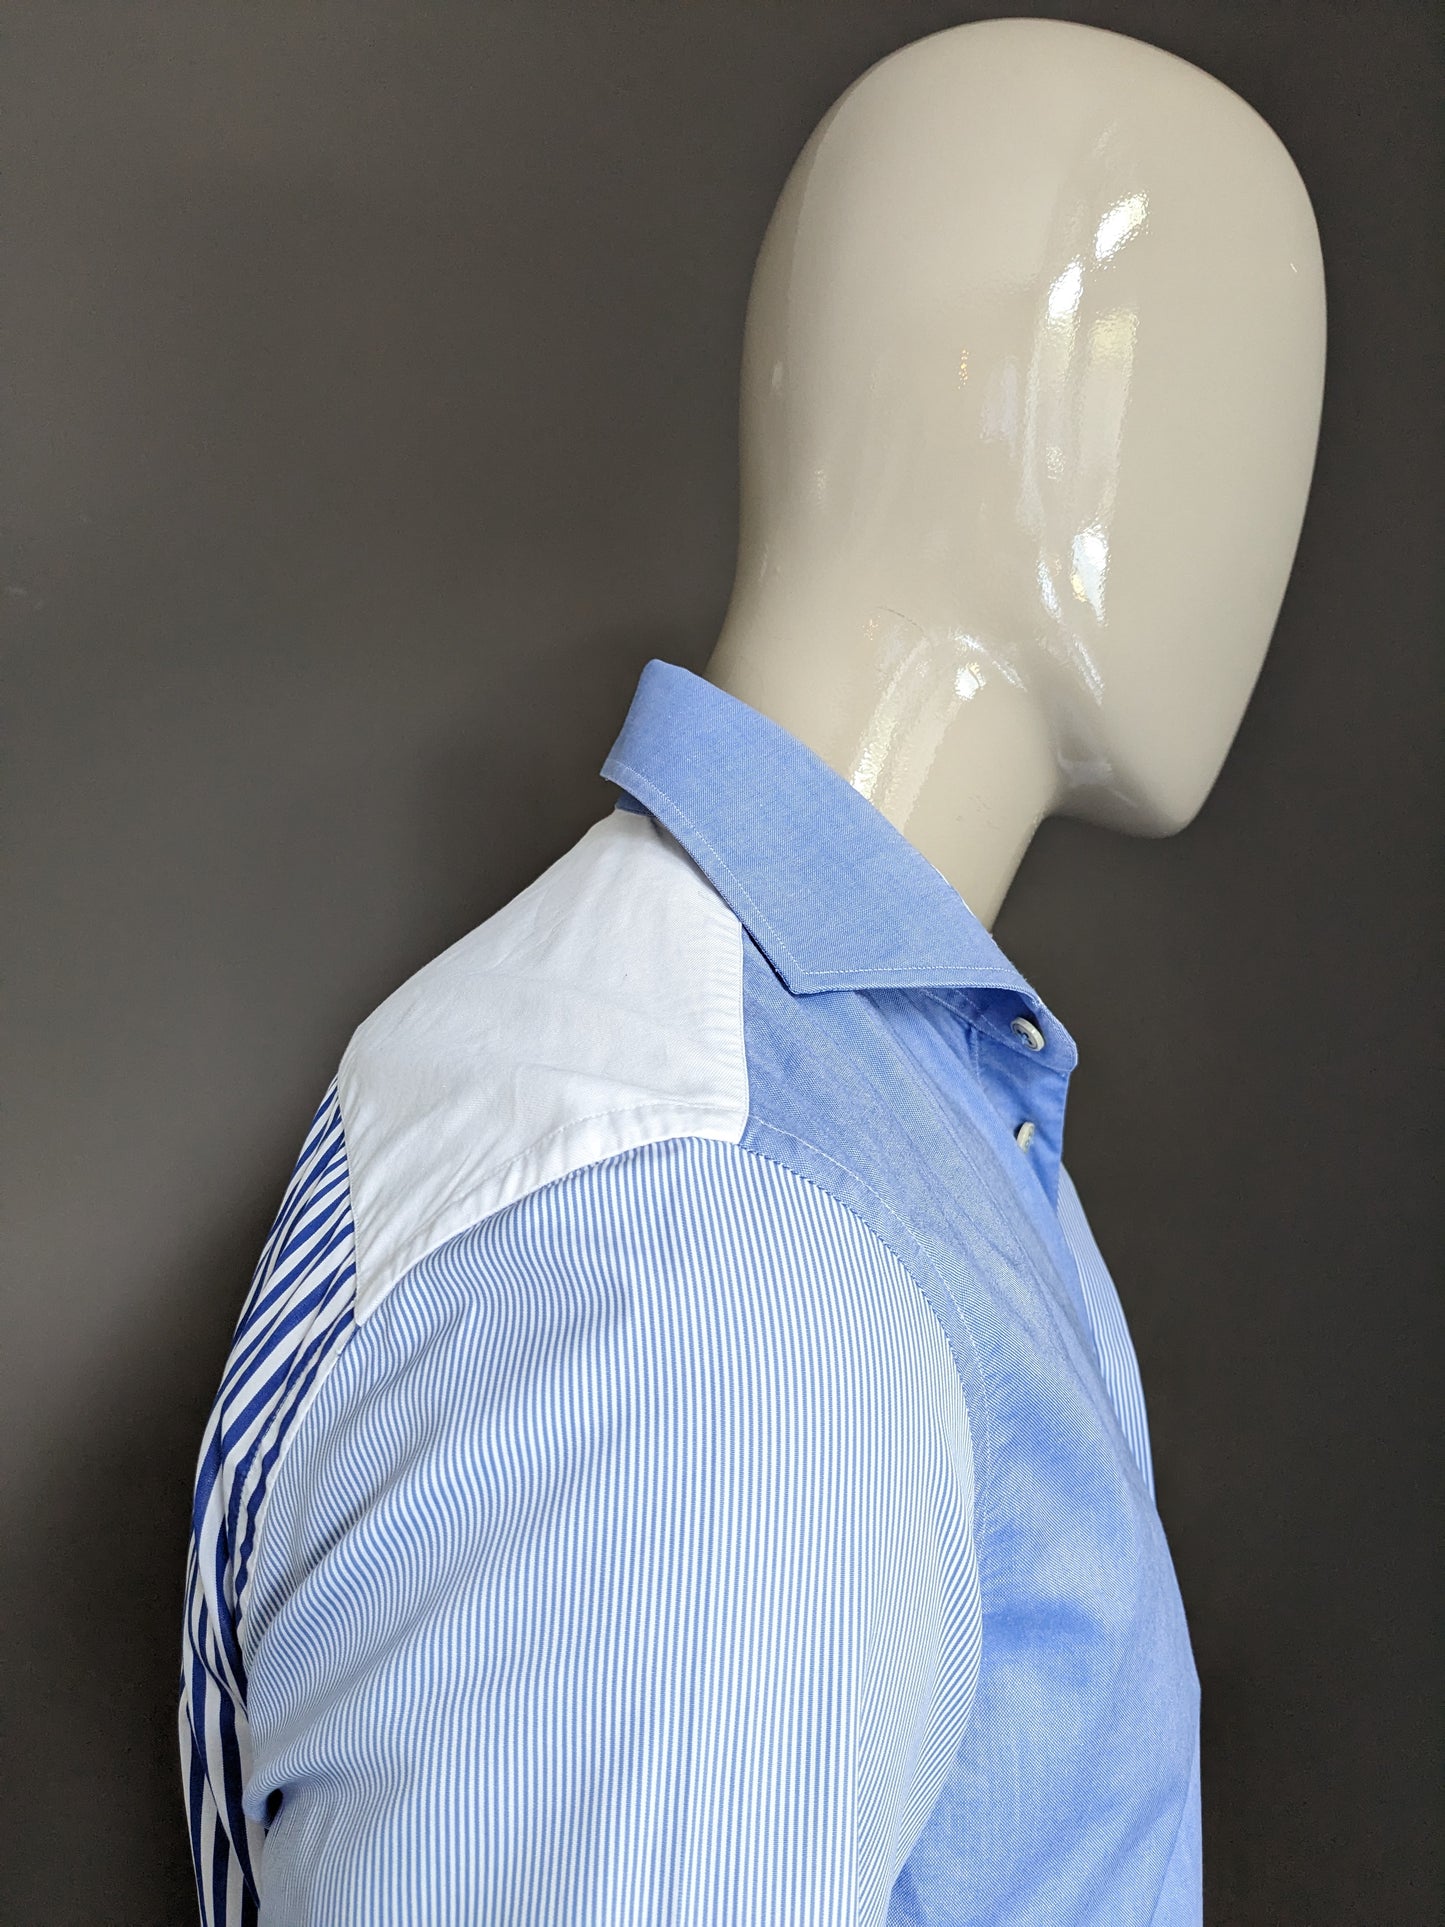 Profuomo Sky Blue Shirt. Blau weiß gefärbte / Motiv. Größe 40 / m Slim Fit.